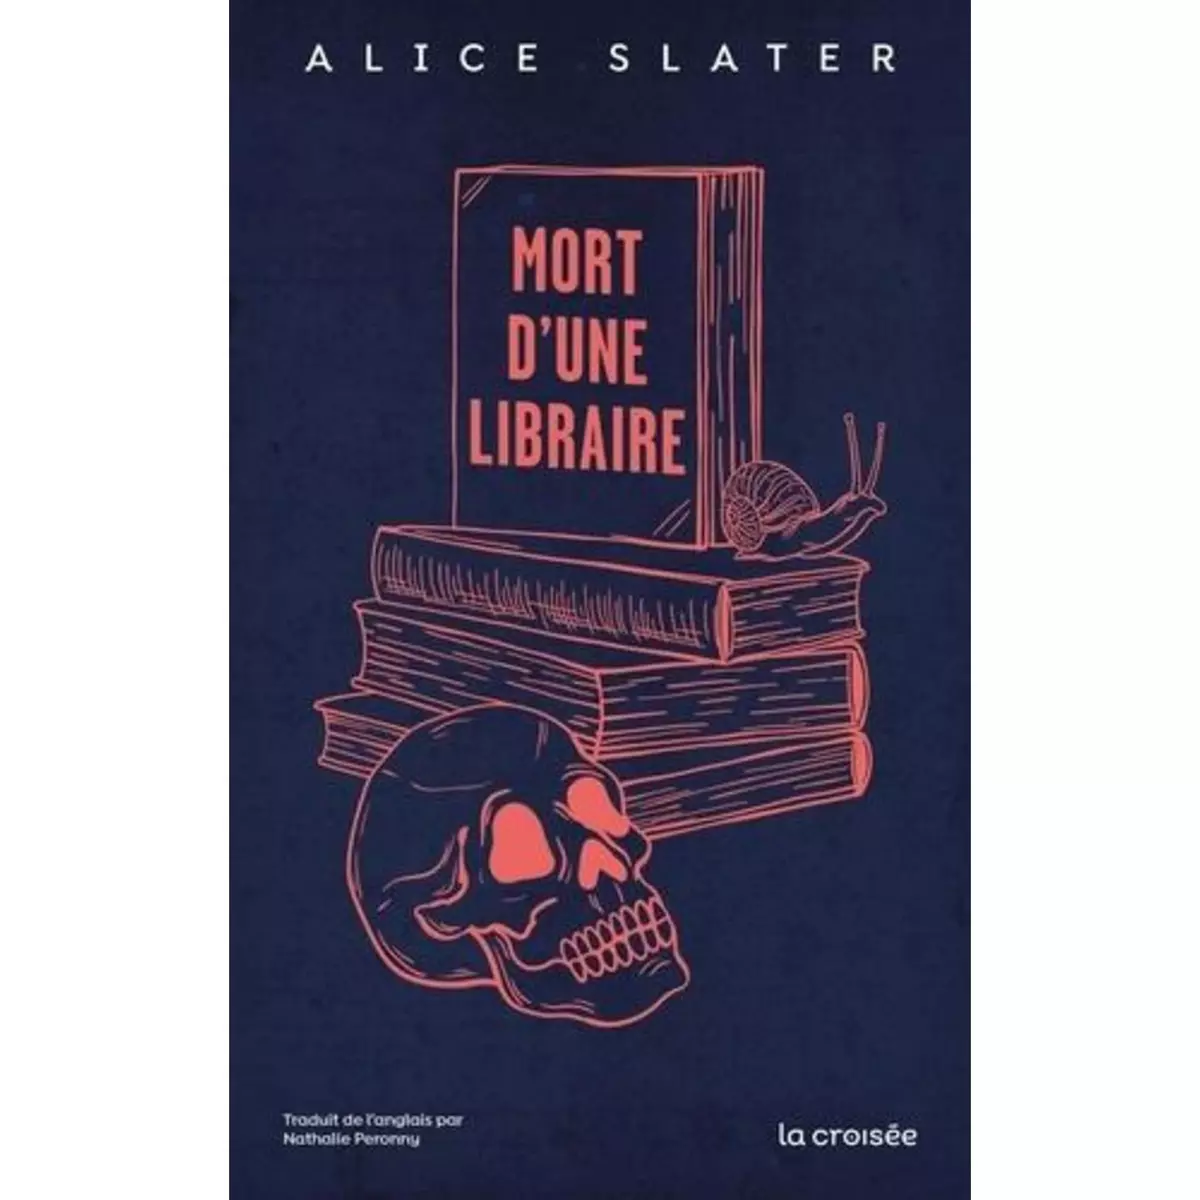  MORT D'UNE LIBRAIRE, Slater Alice